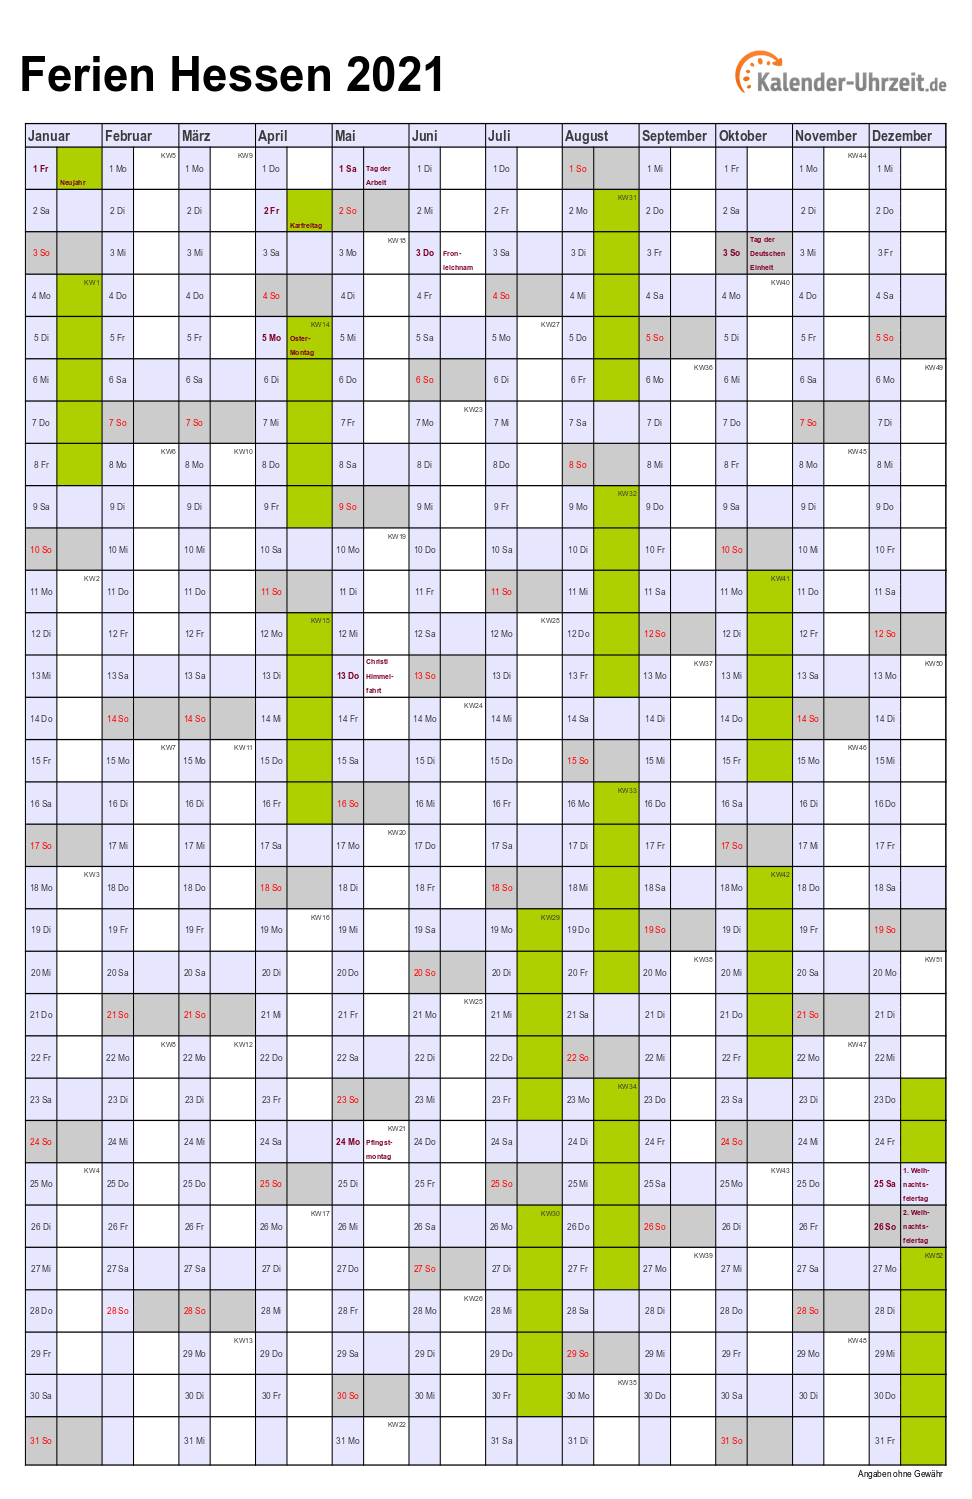 Ferien Hessen 2021 - Ferienkalender zum Ausdrucken